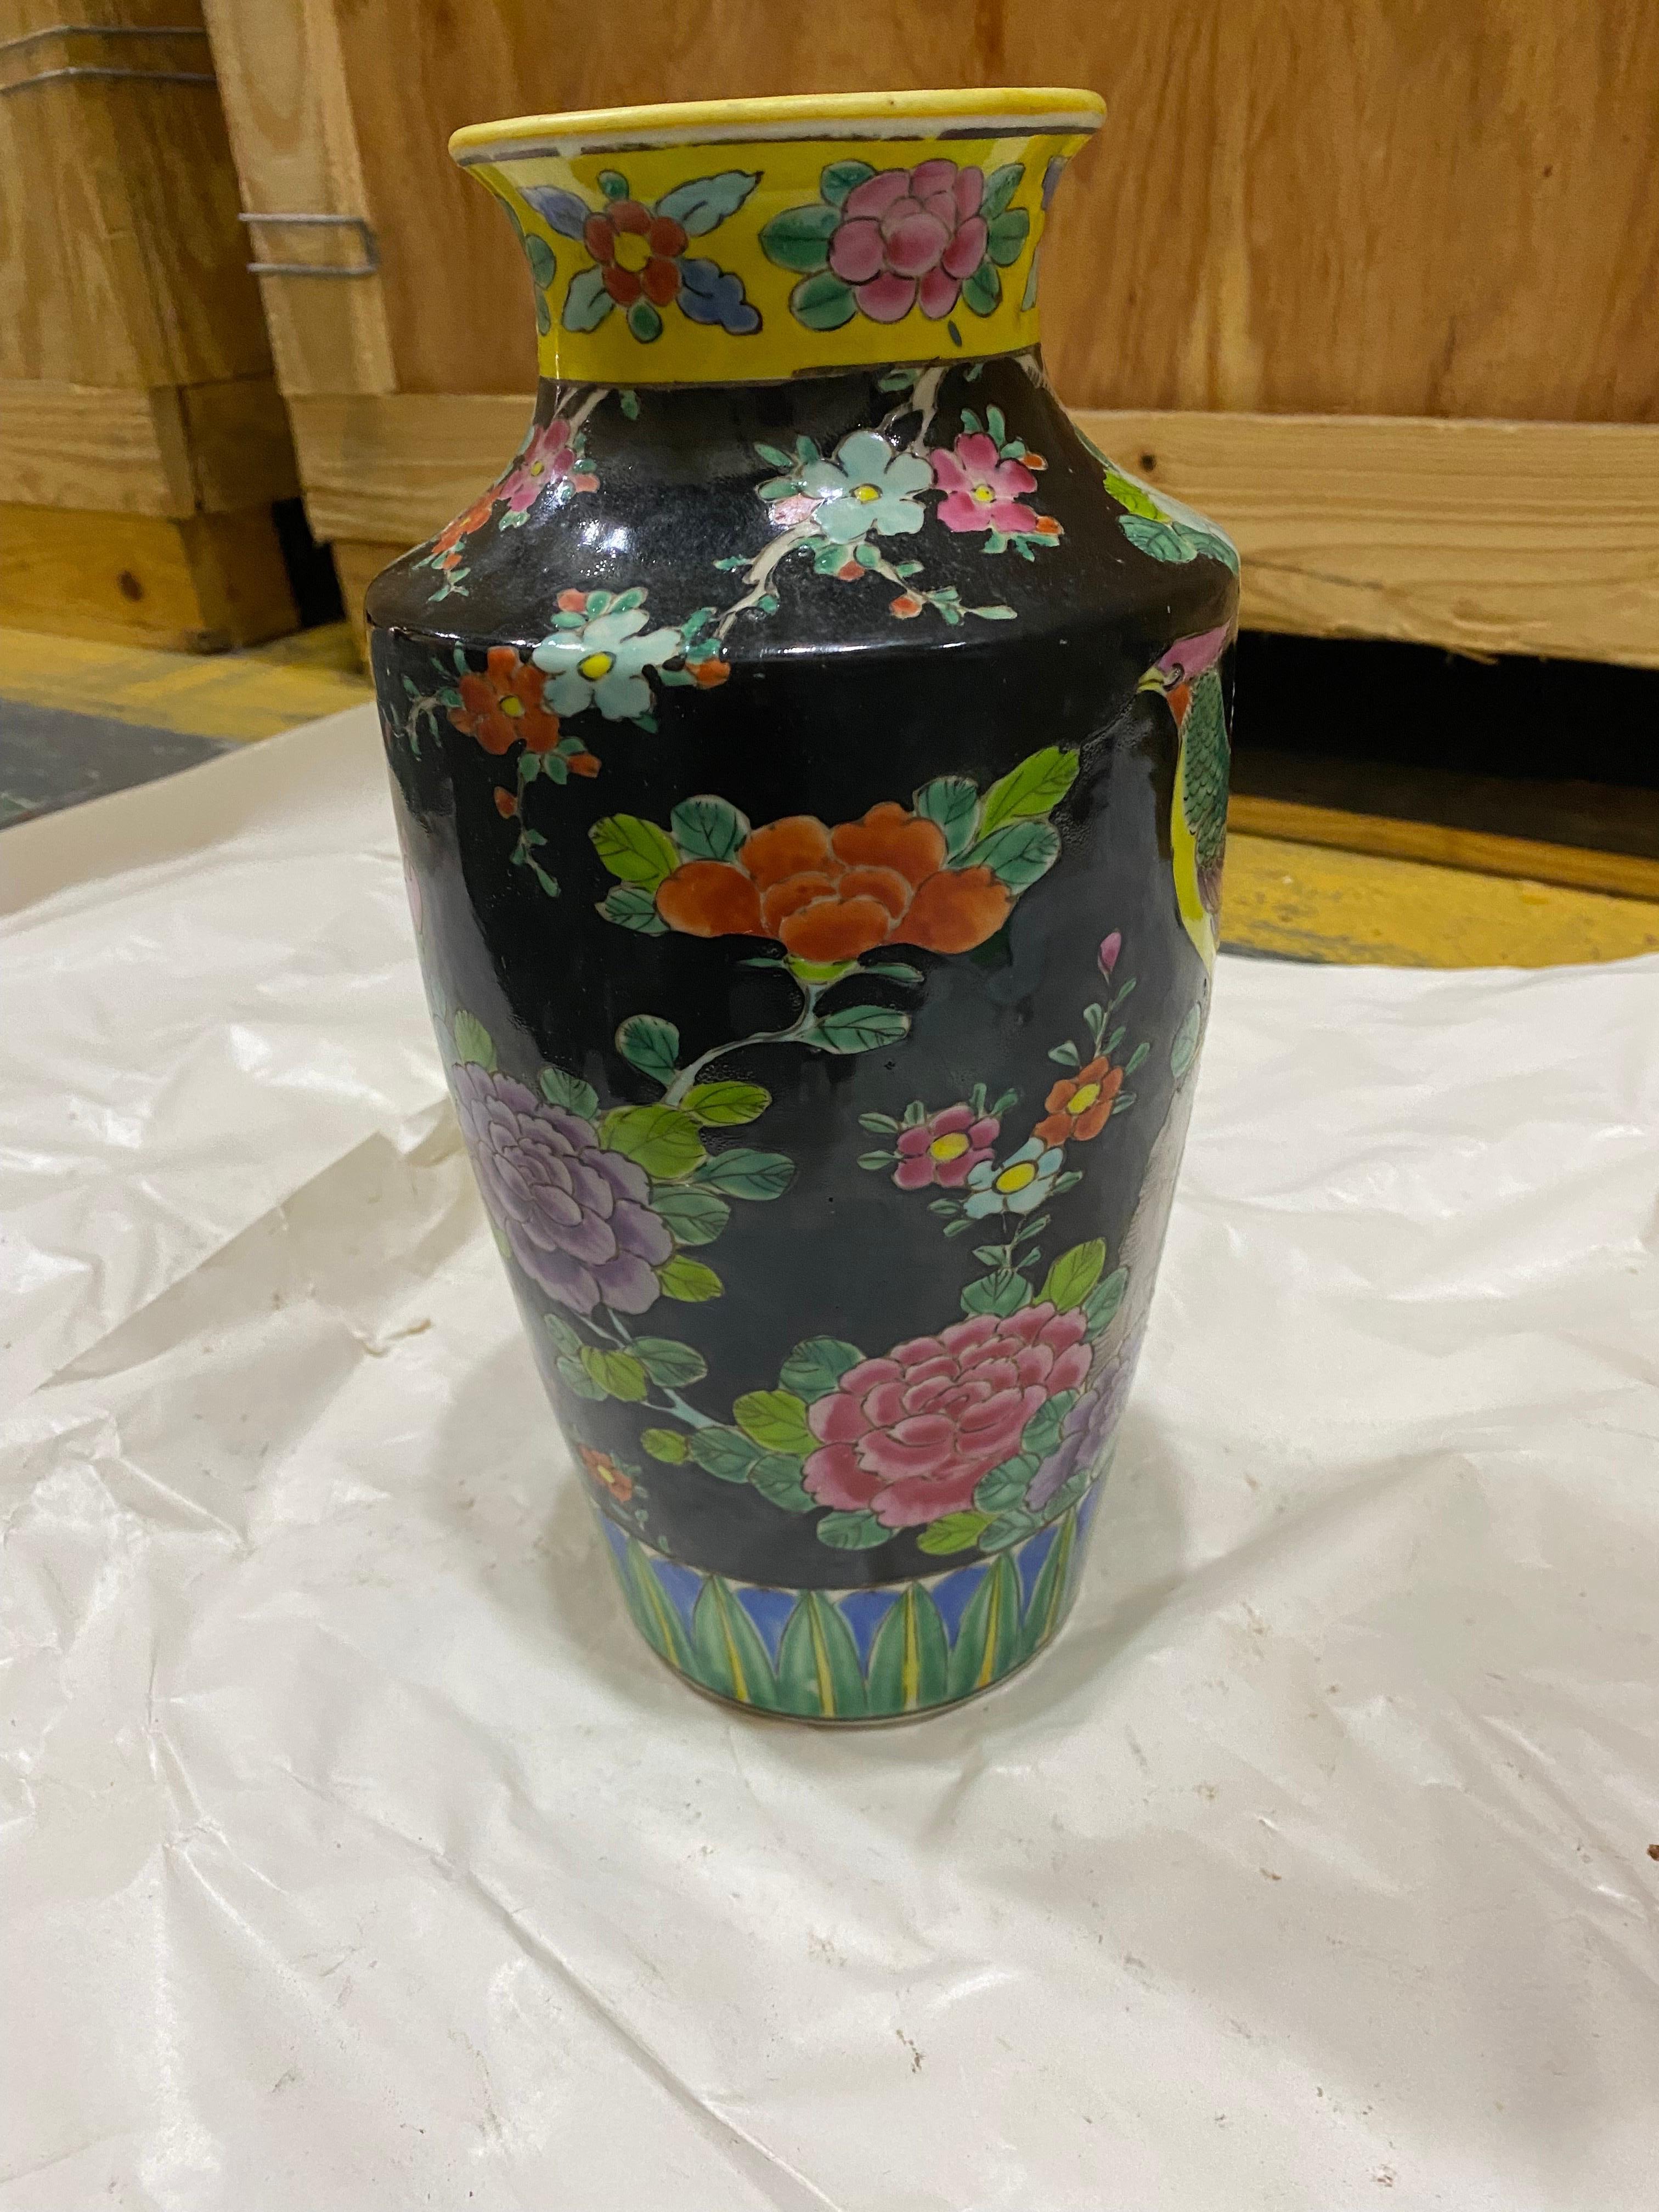 Vase chinois du début du 20e siècle, noir avec coq émaillé multicolore.
Ce joli vase a été peint pour ressembler à une œuvre cloisonnée. Sur un fond noir, le coq bien-aimé perché sur une branche de chrysanthèmes est peint dans des couleurs vives